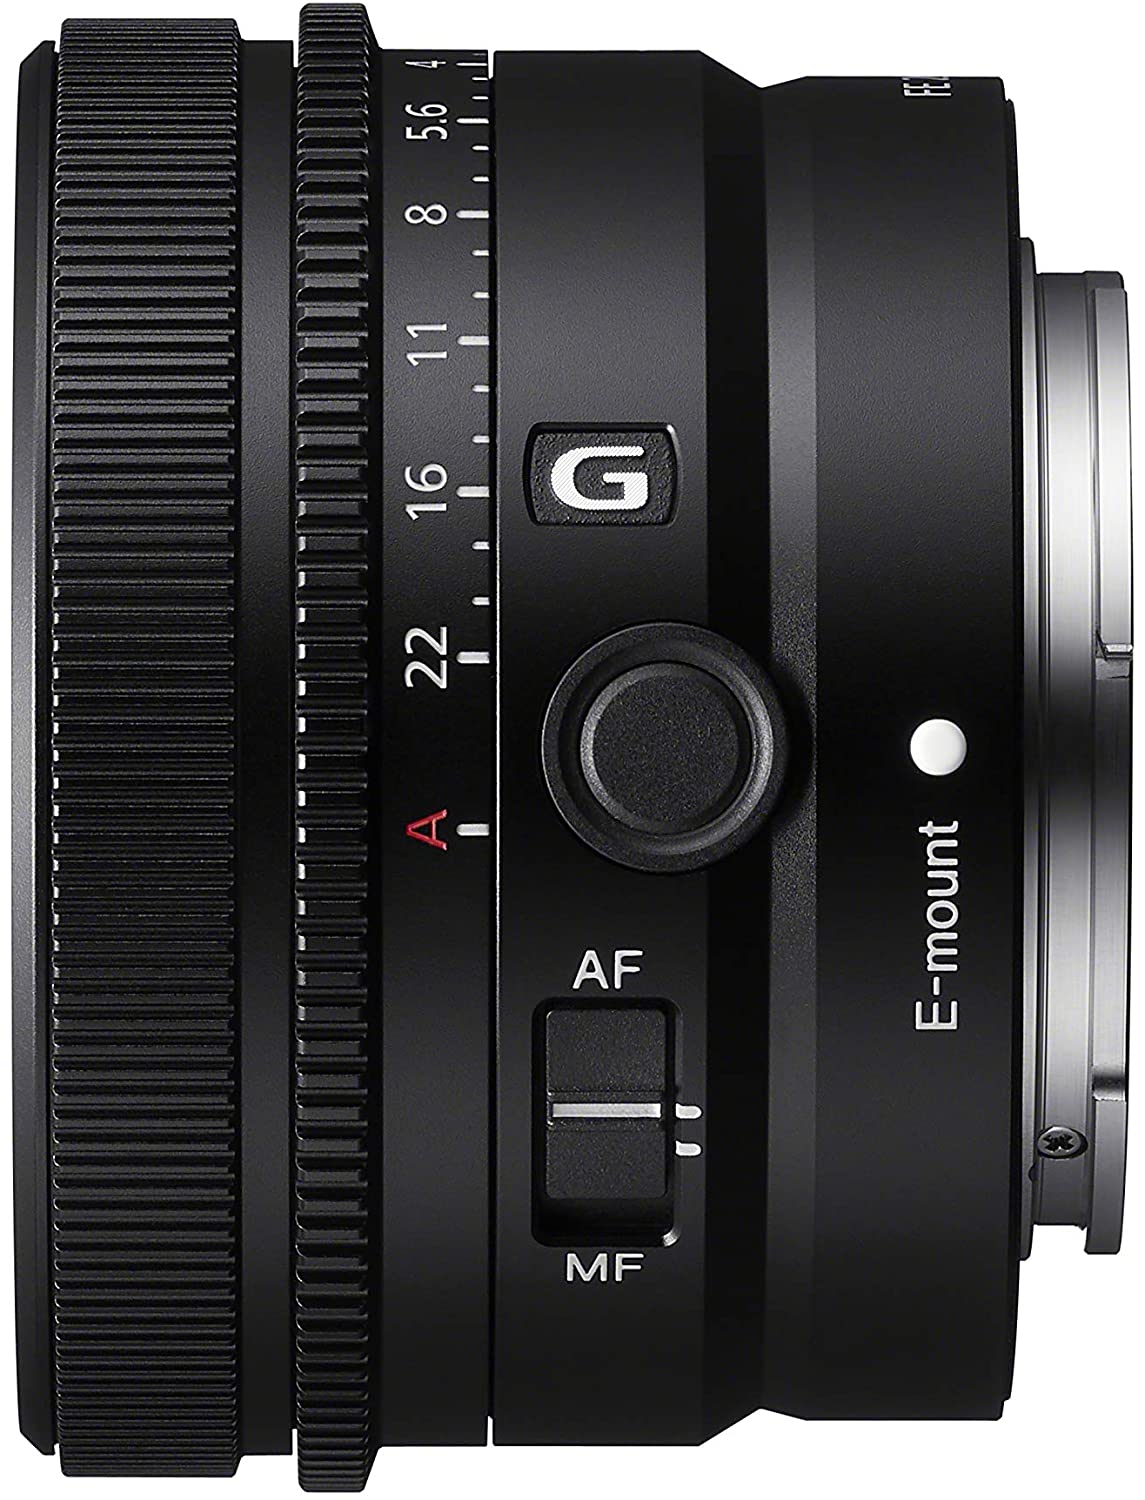 Sony FE 24mm F2.8 G Full-frame ultra-compact G Lens